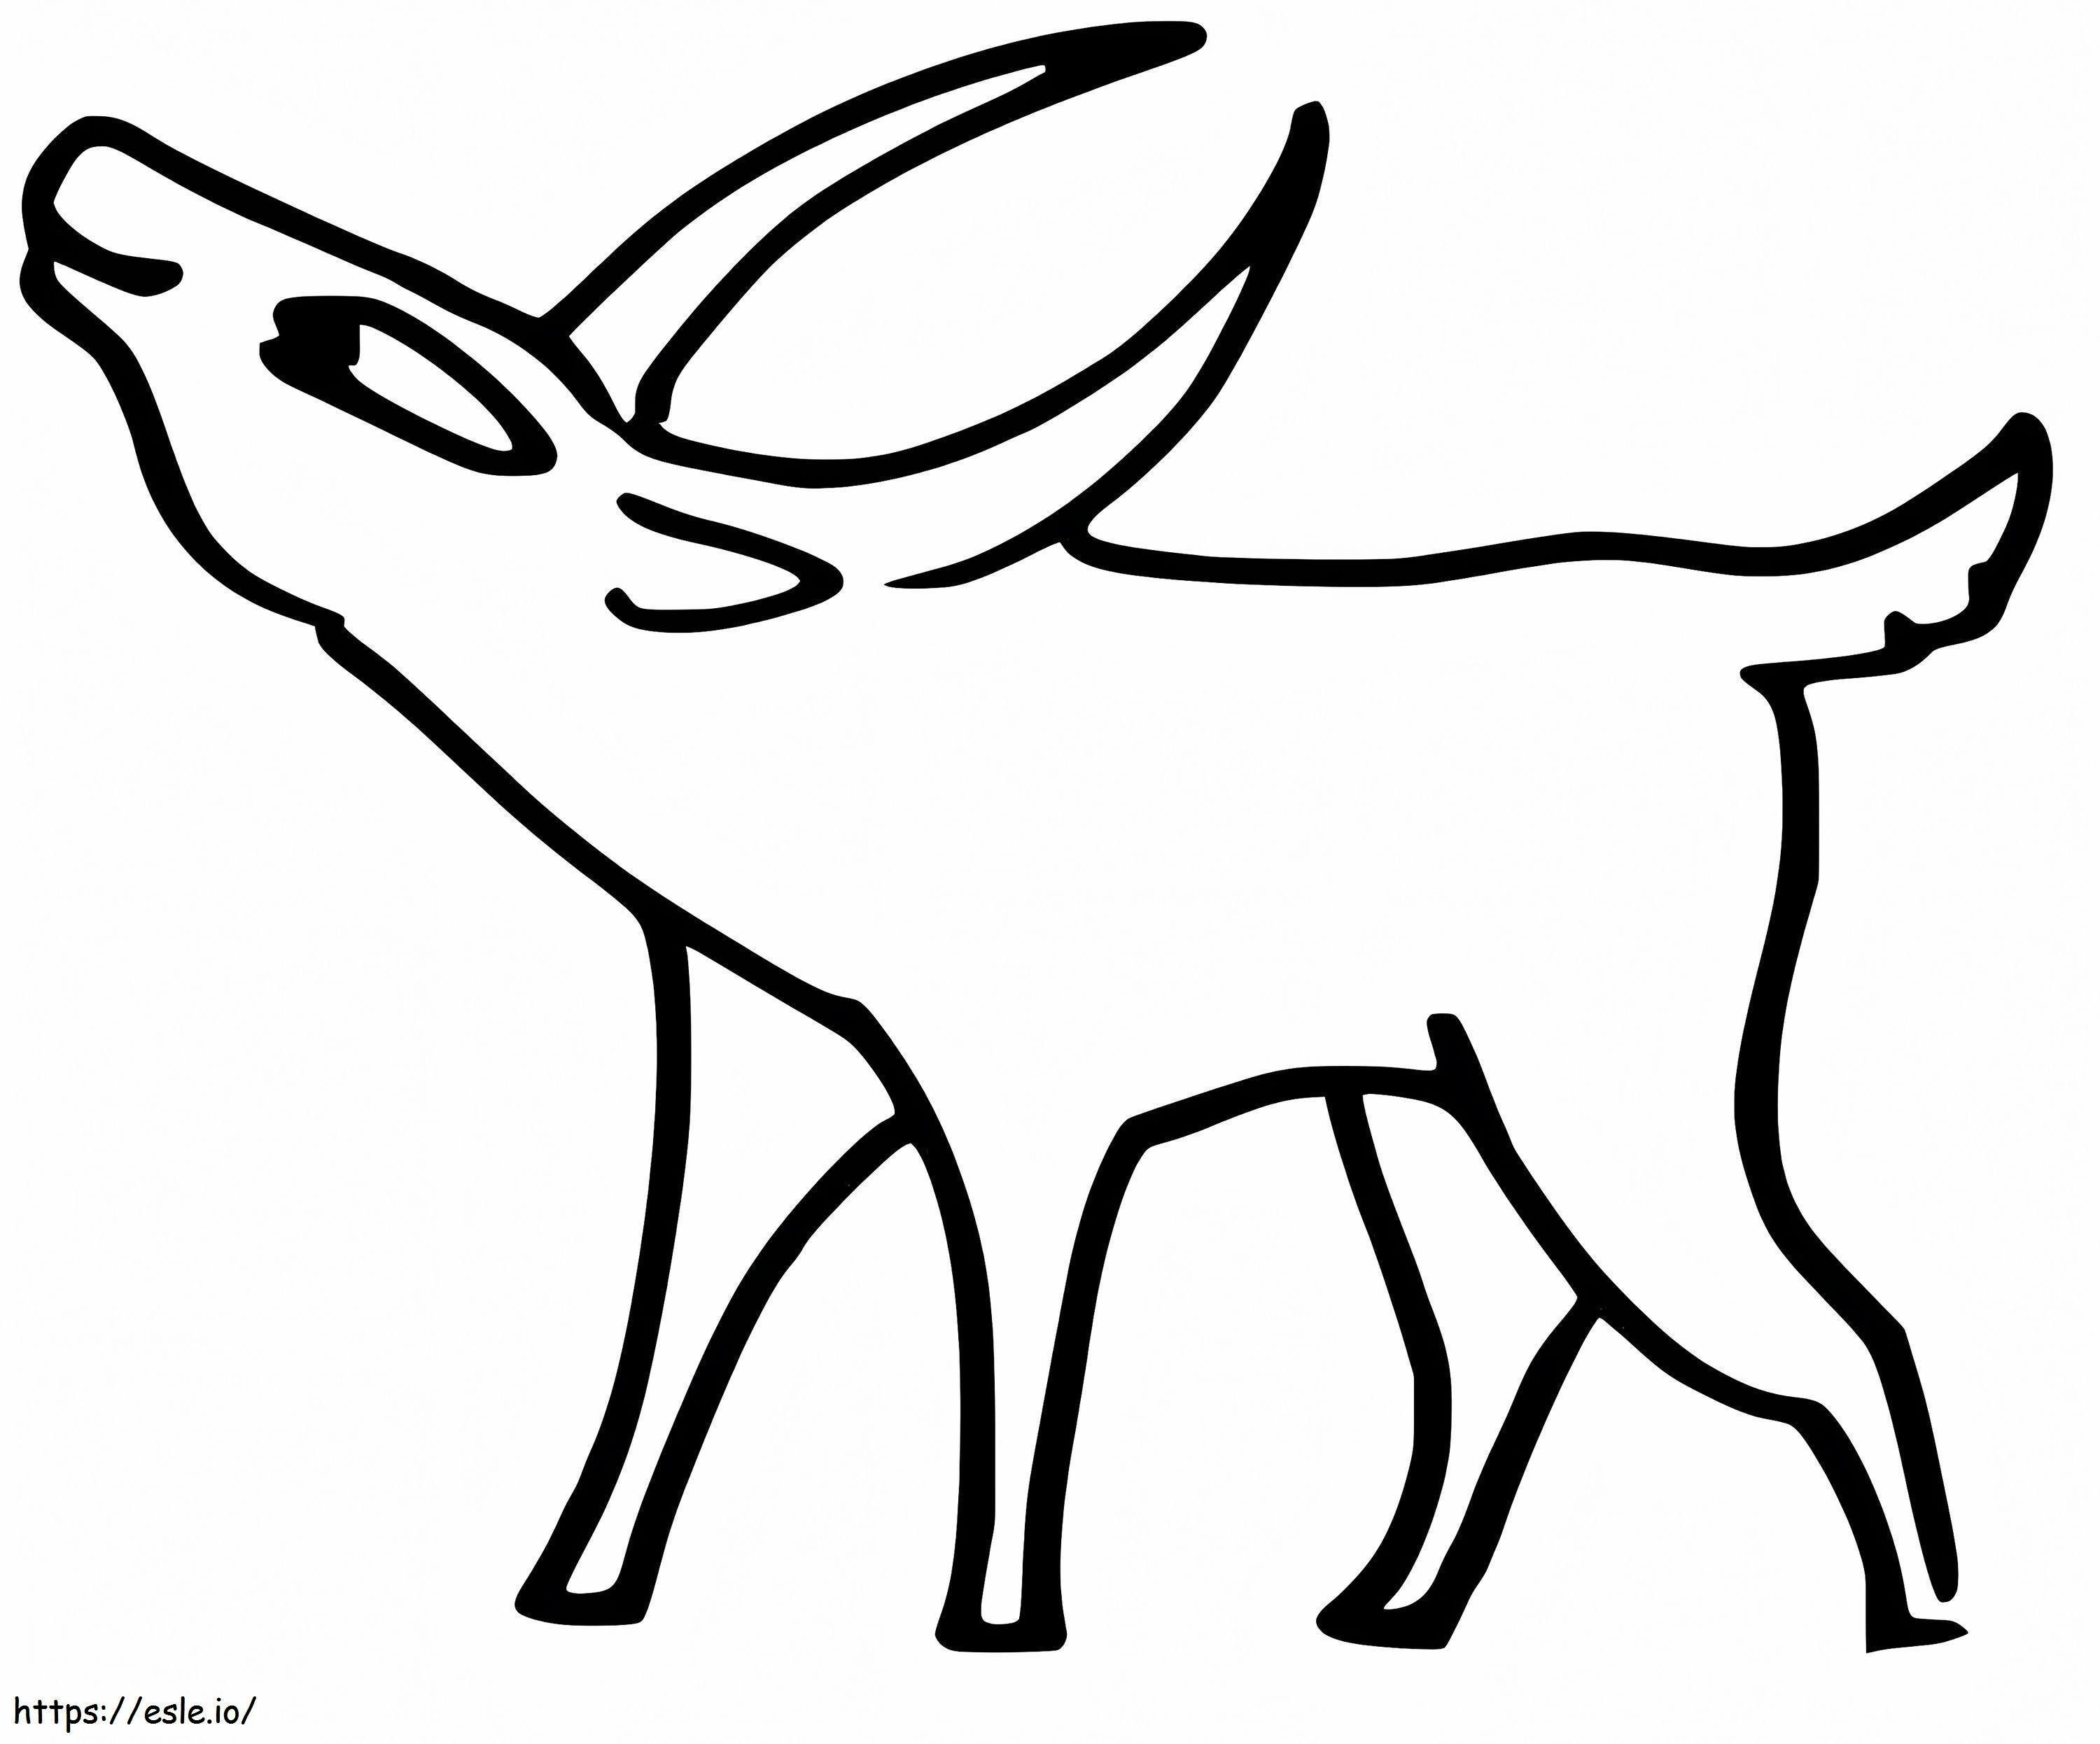 Coloriage Antilope drôle à imprimer dessin